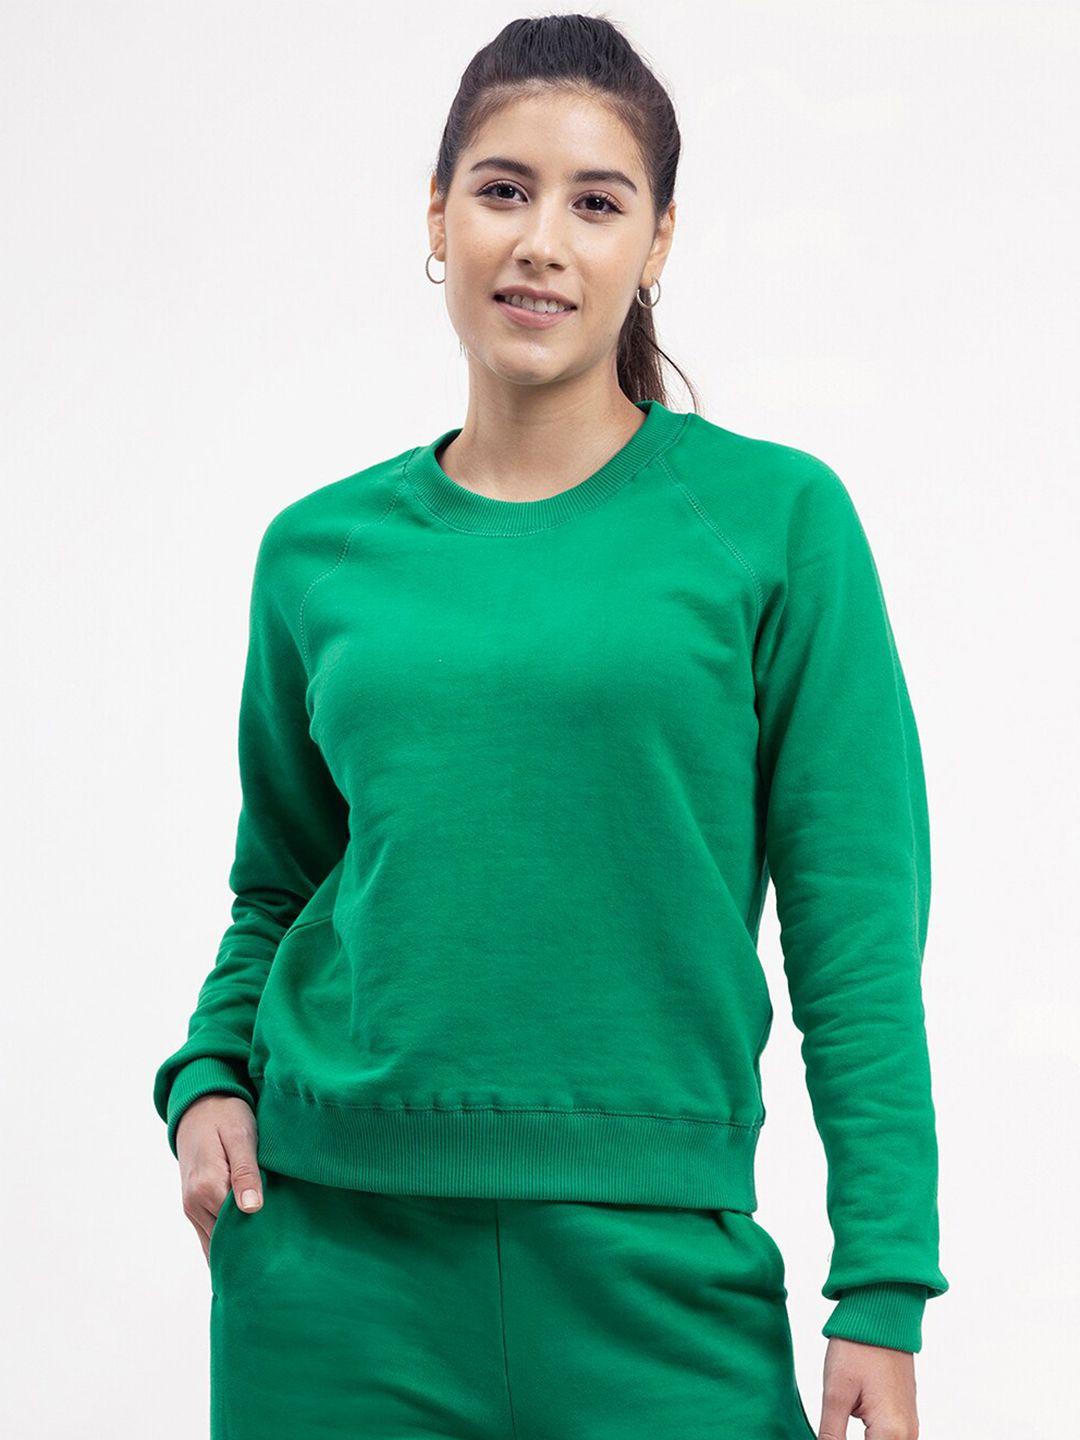 fablestreet-women-green-solid-long-sleeves-sweatshirt